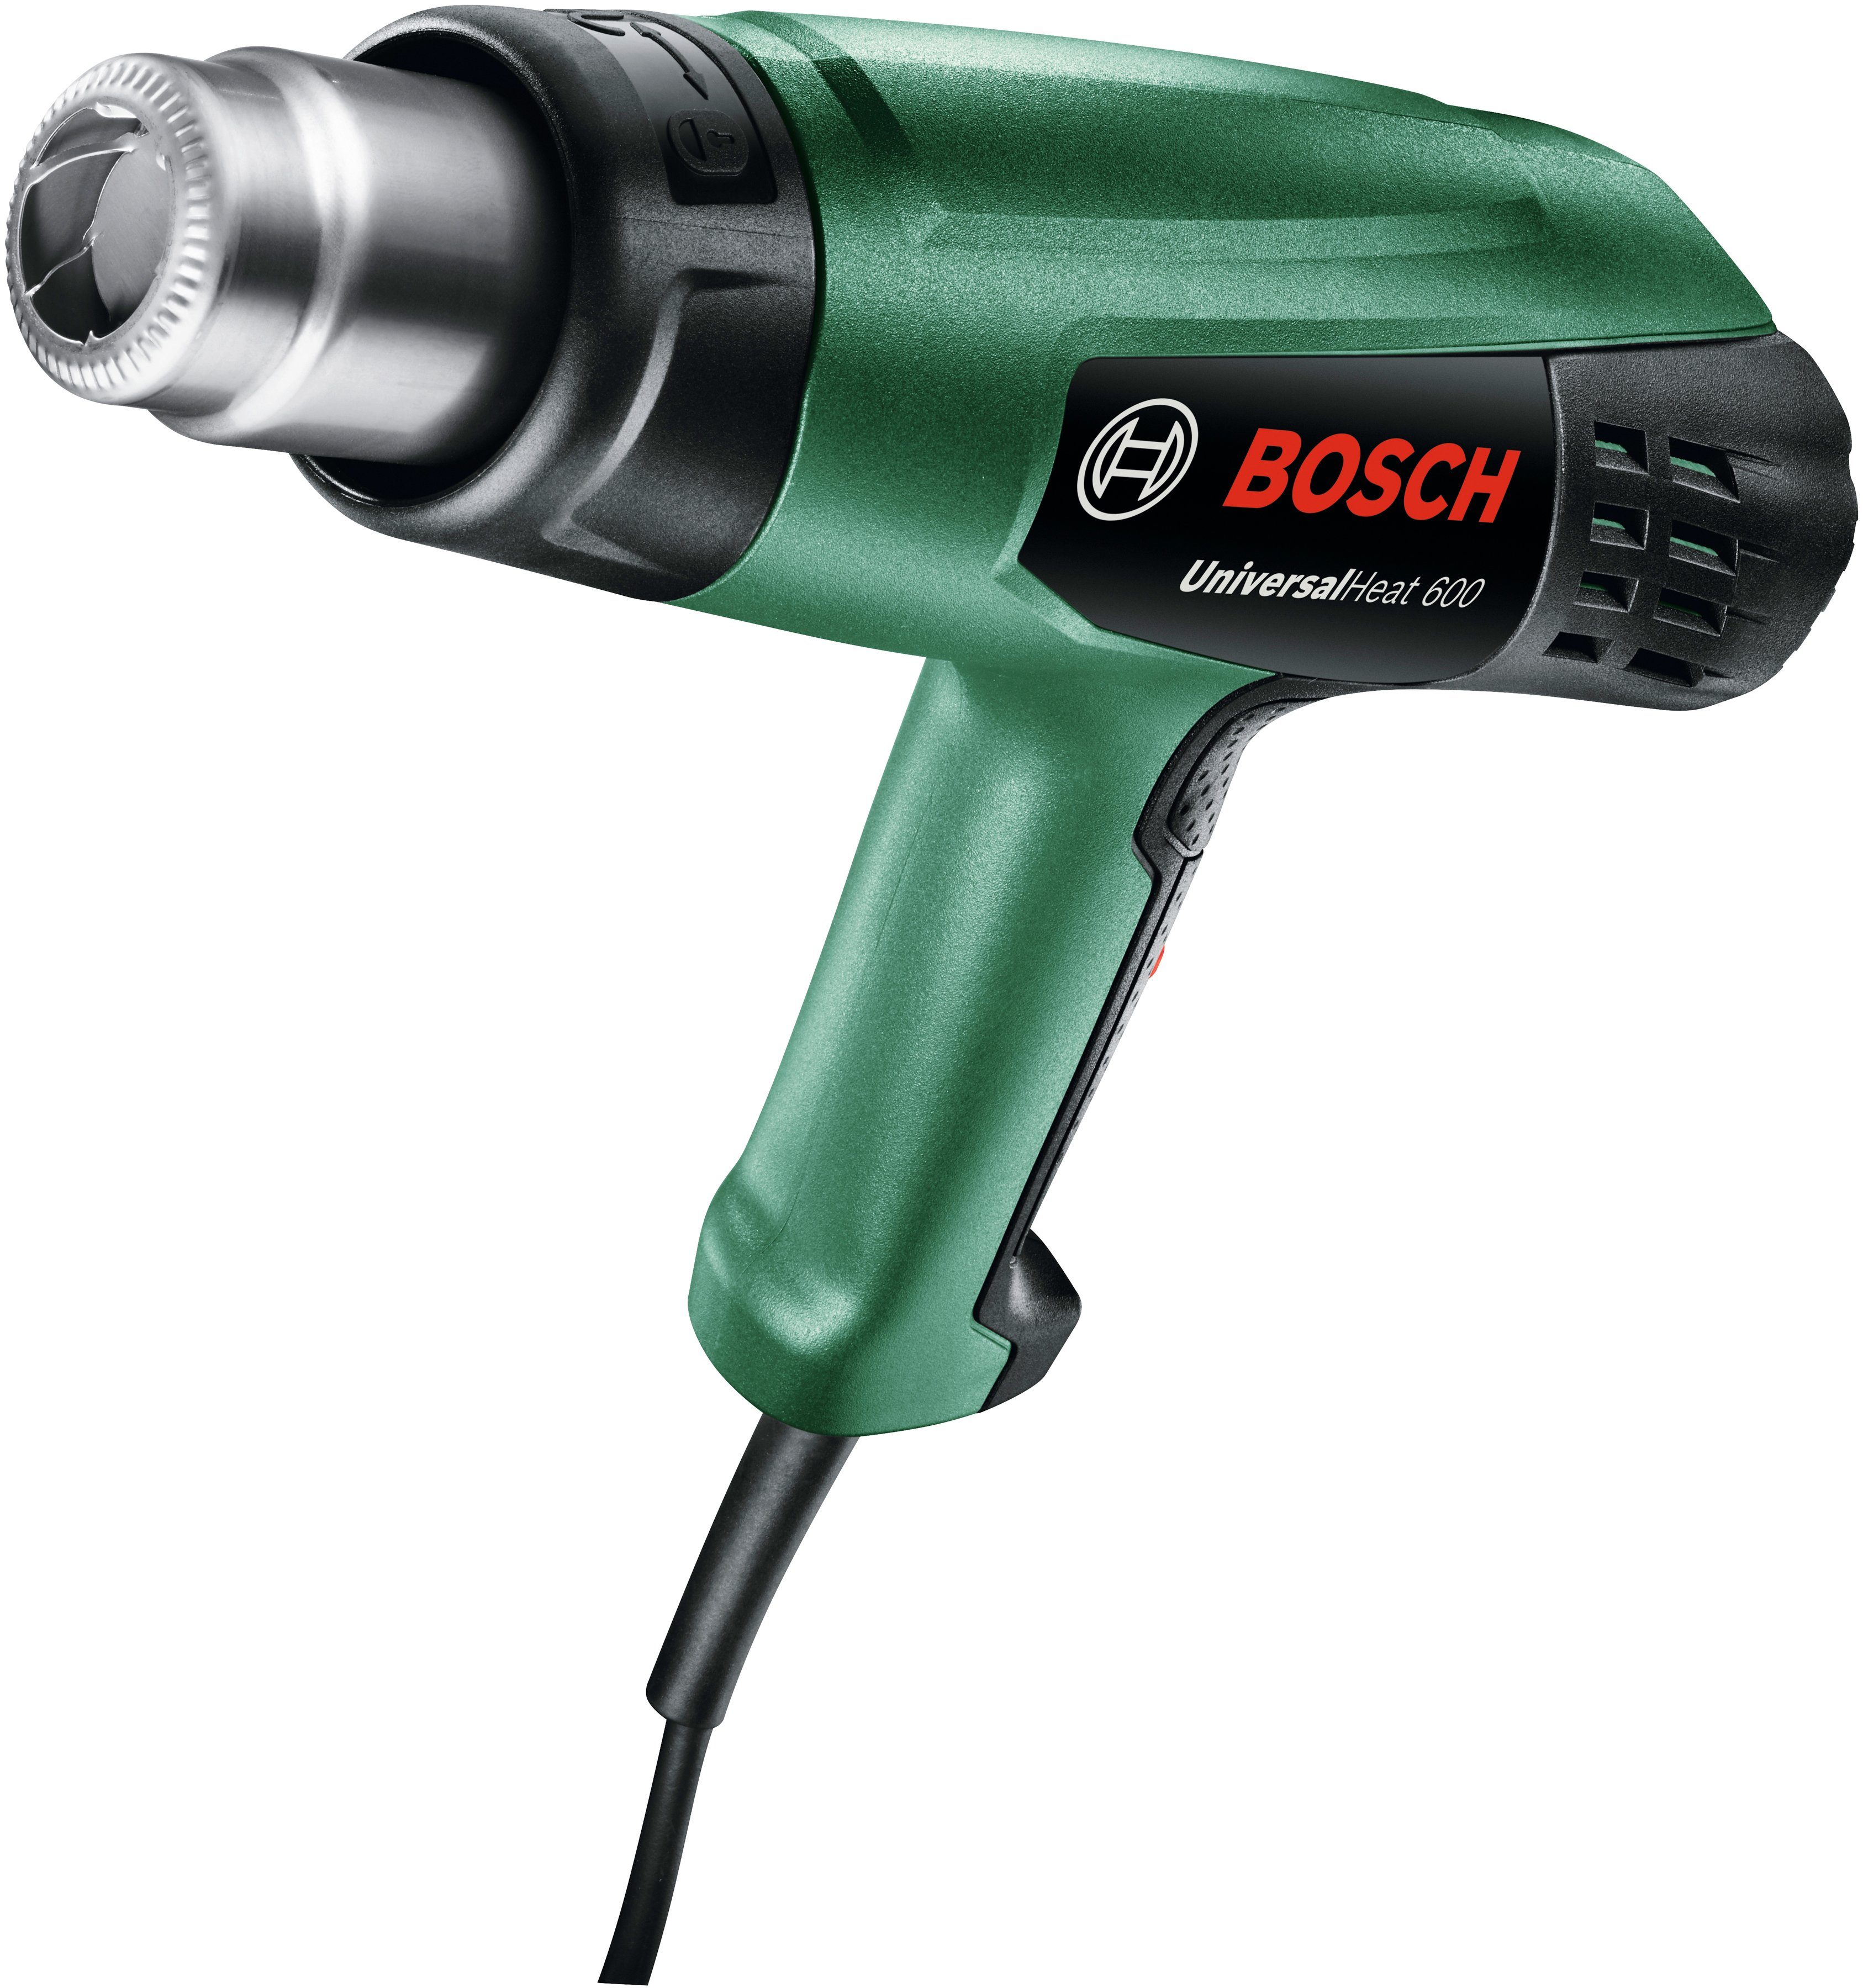 Bosch 600 UniversalHeat in bis Garden Heißluftgebläse 600, °C & max. 1800 W, Home